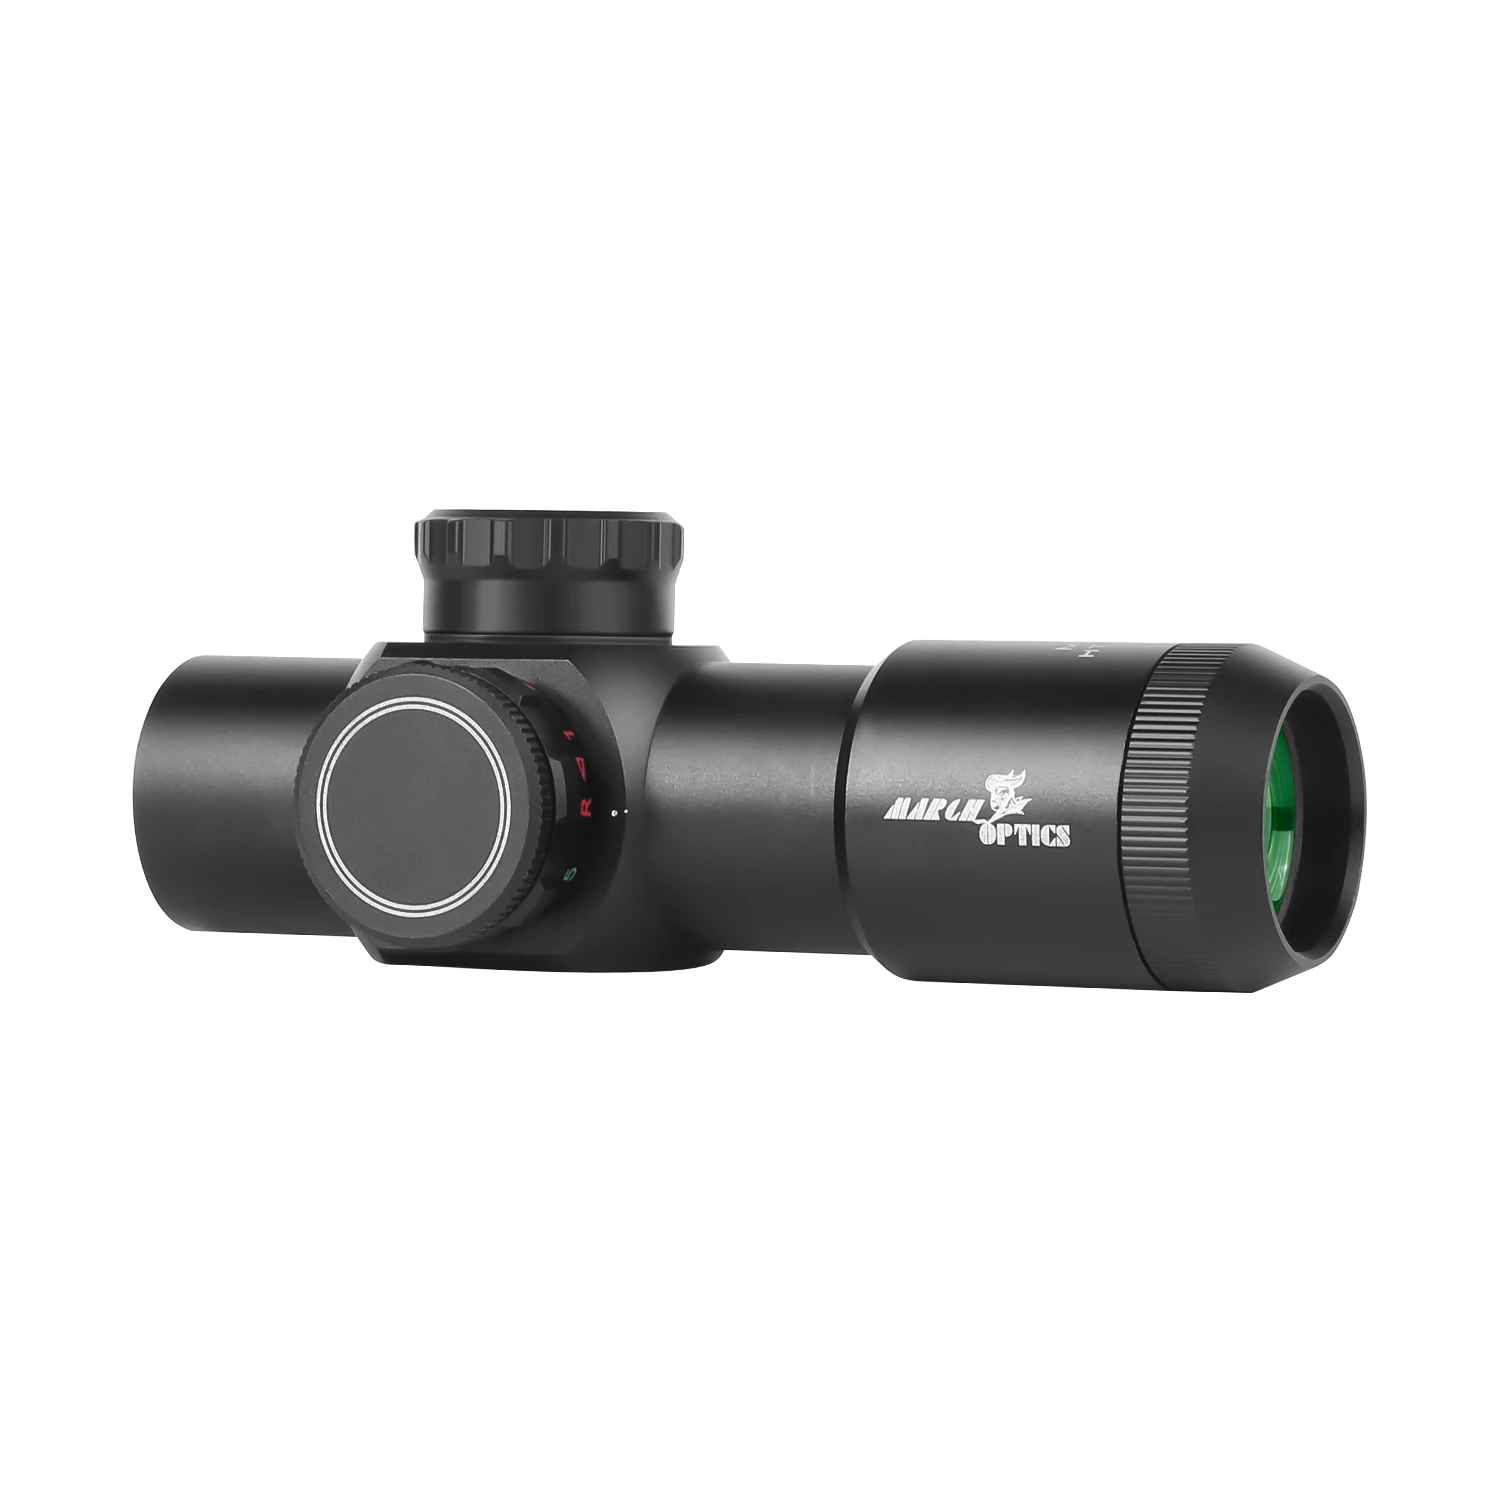 

MARCH-Lunette sight, red dot air gun, outdoor sports, HTML, optical, shooting, Glock gun sight, 3x28IR